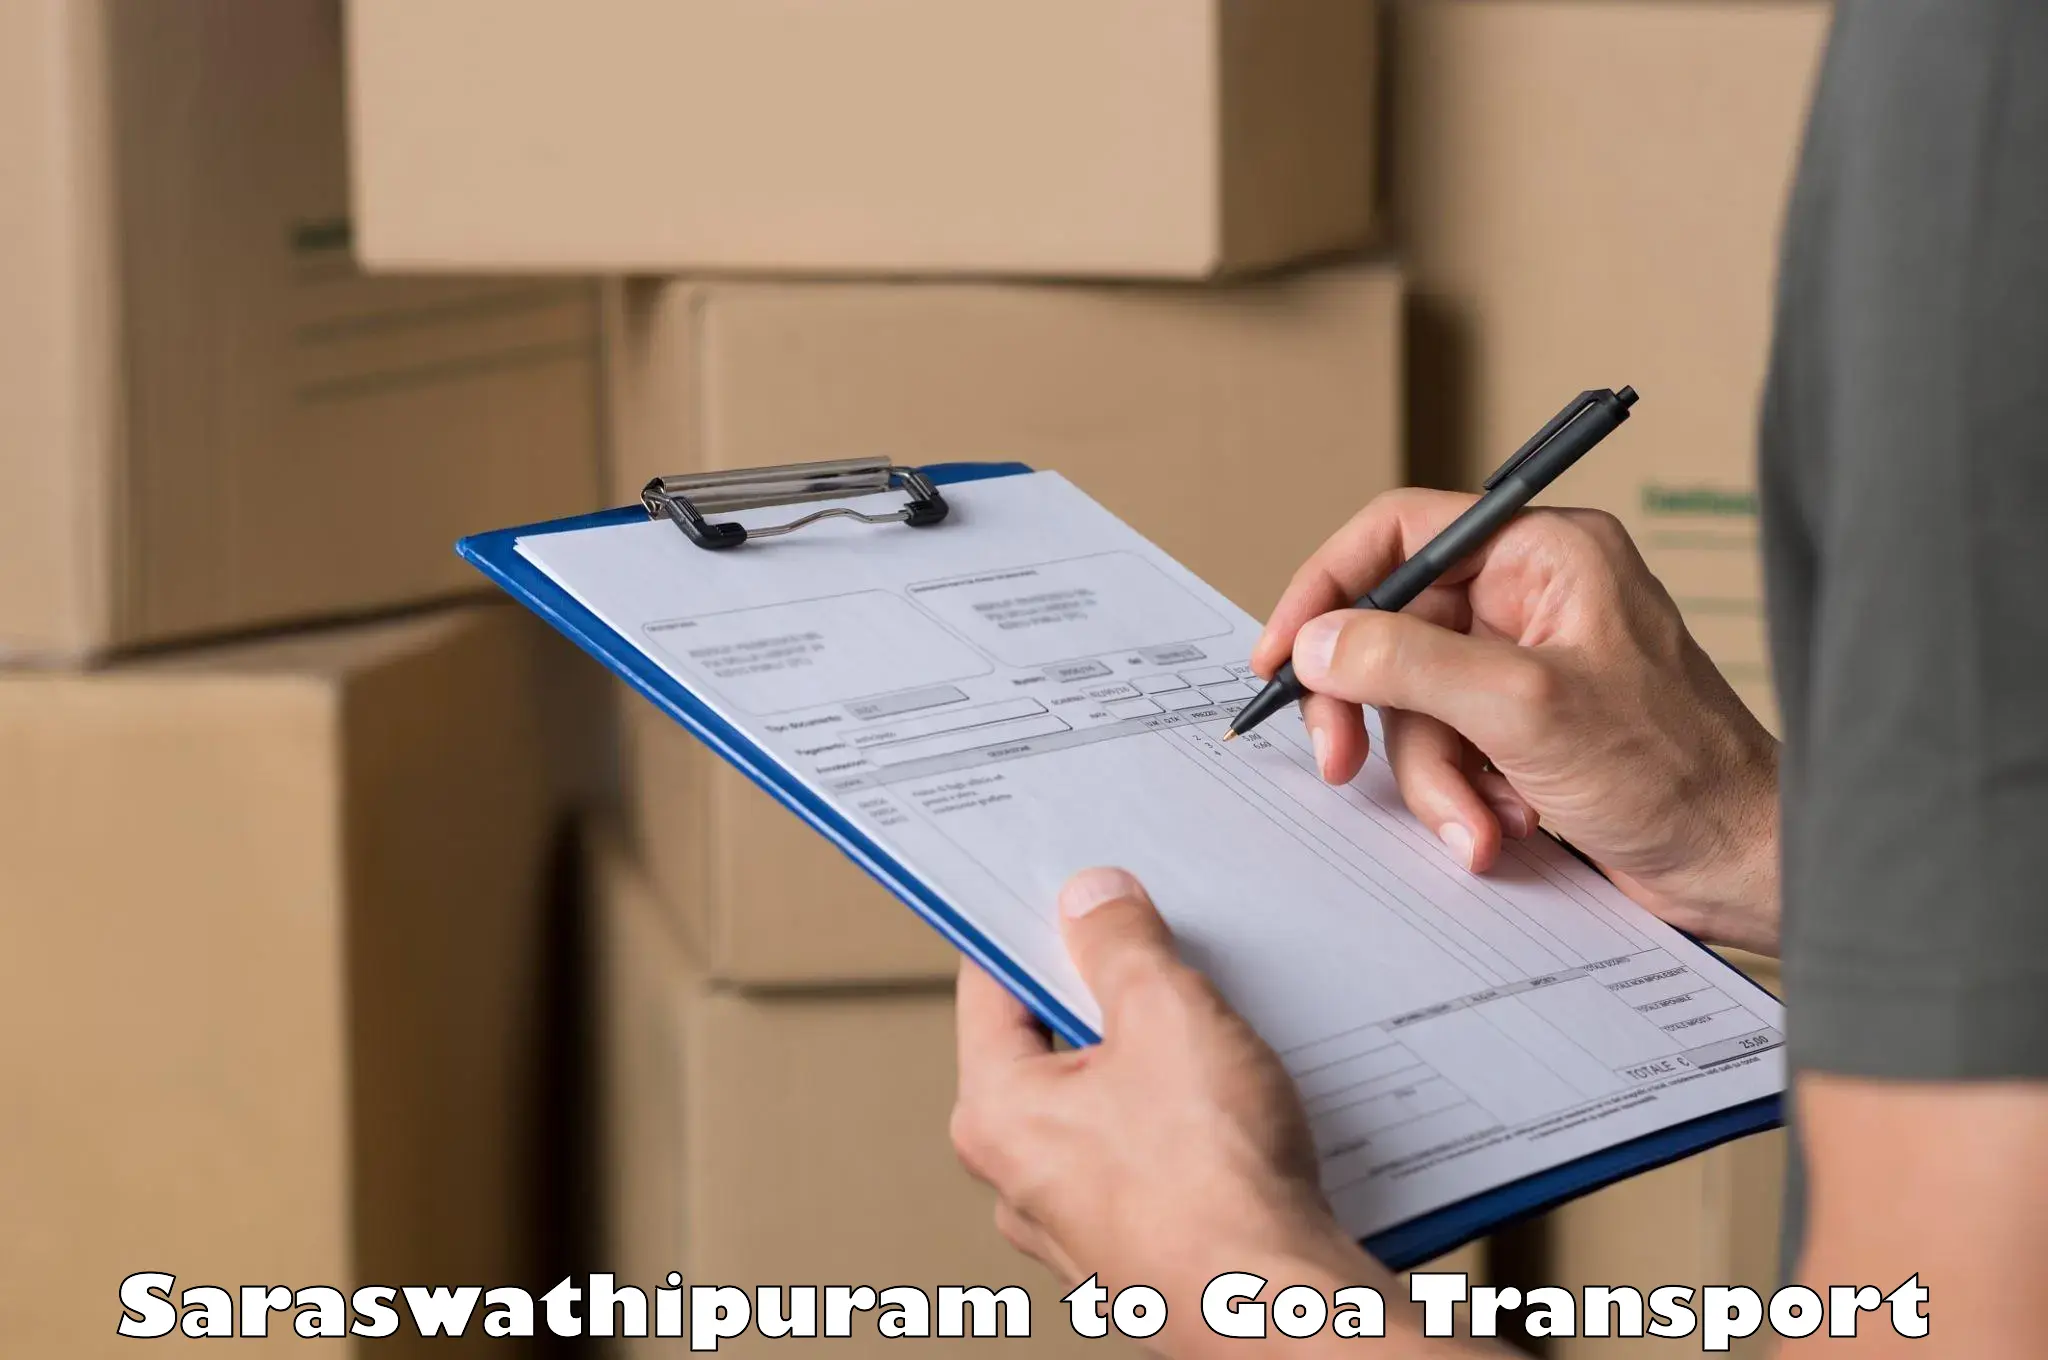 Commercial transport service Saraswathipuram to Goa